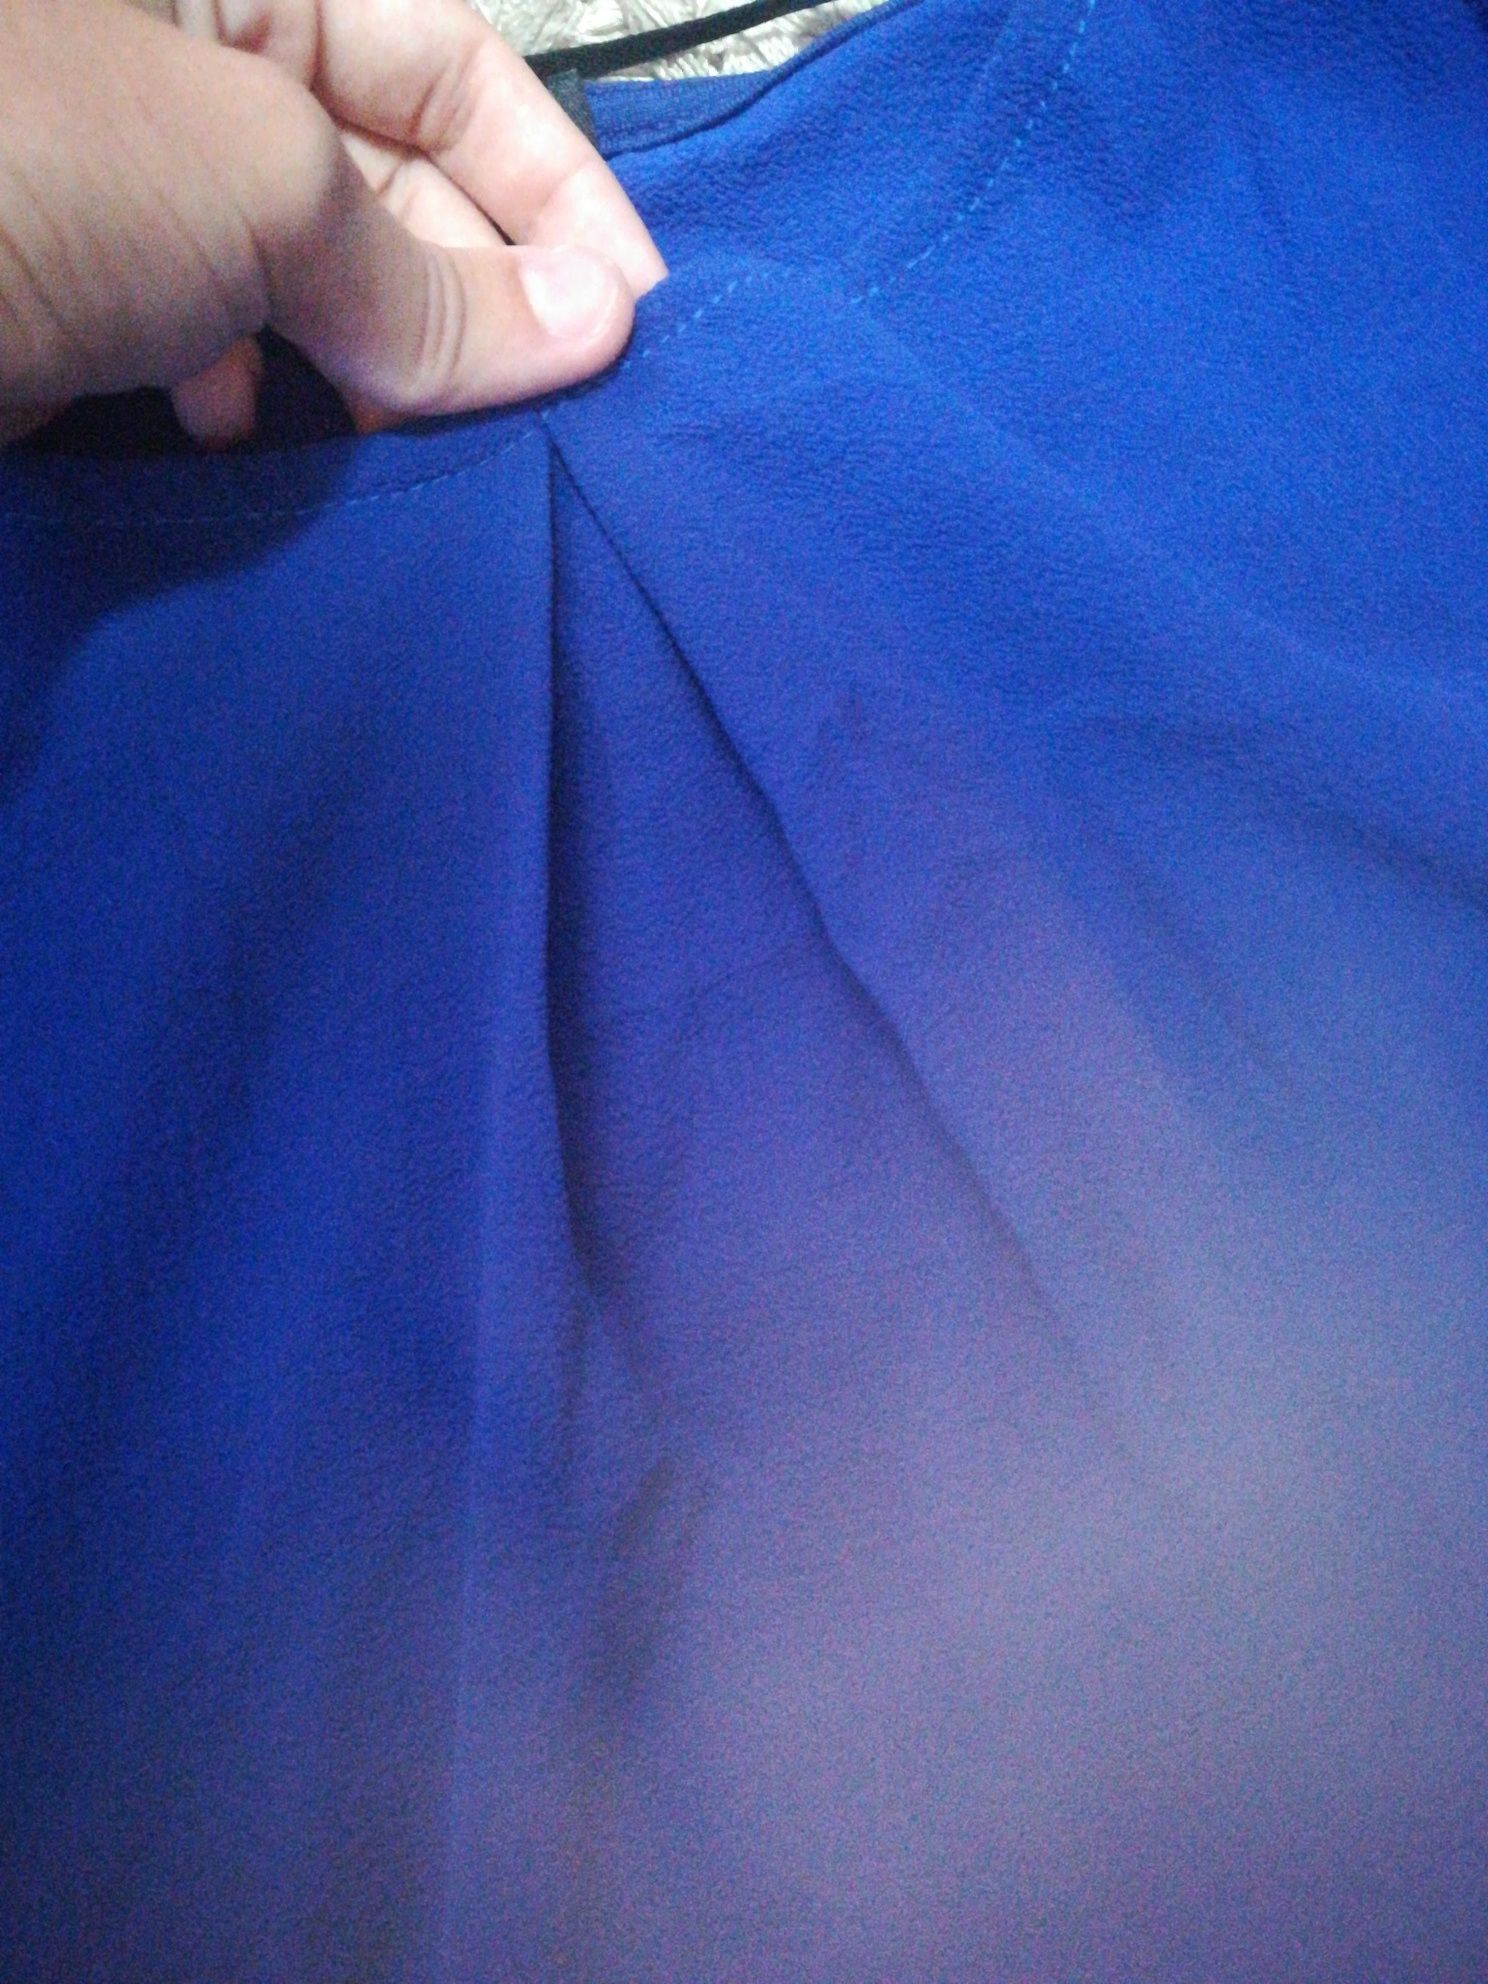 Camisola azul escuro